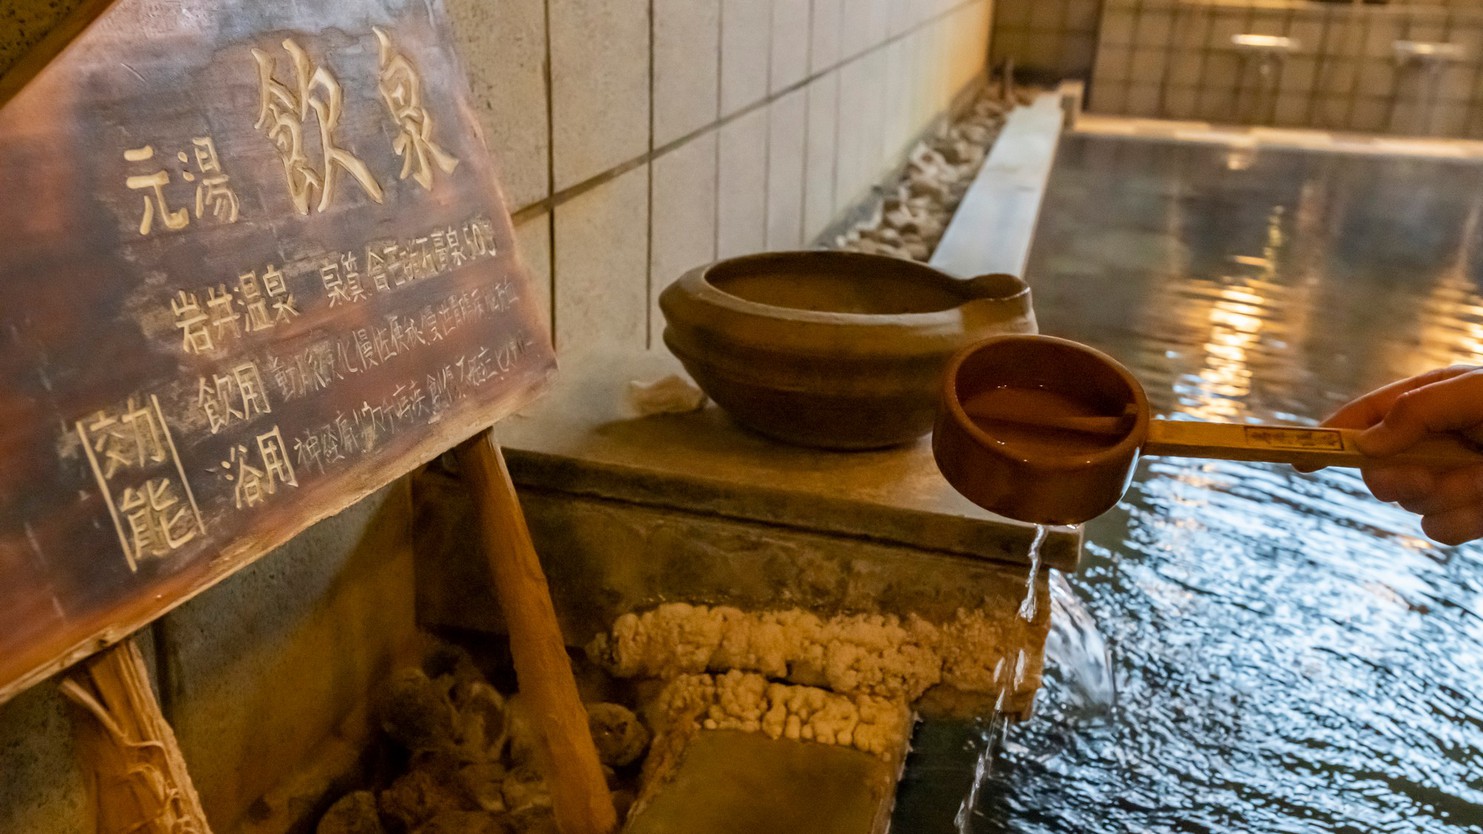 秘湯を守る会に加盟している当館のお湯は全国で147軒、鳥取県で1軒のみ認められた秘湯。